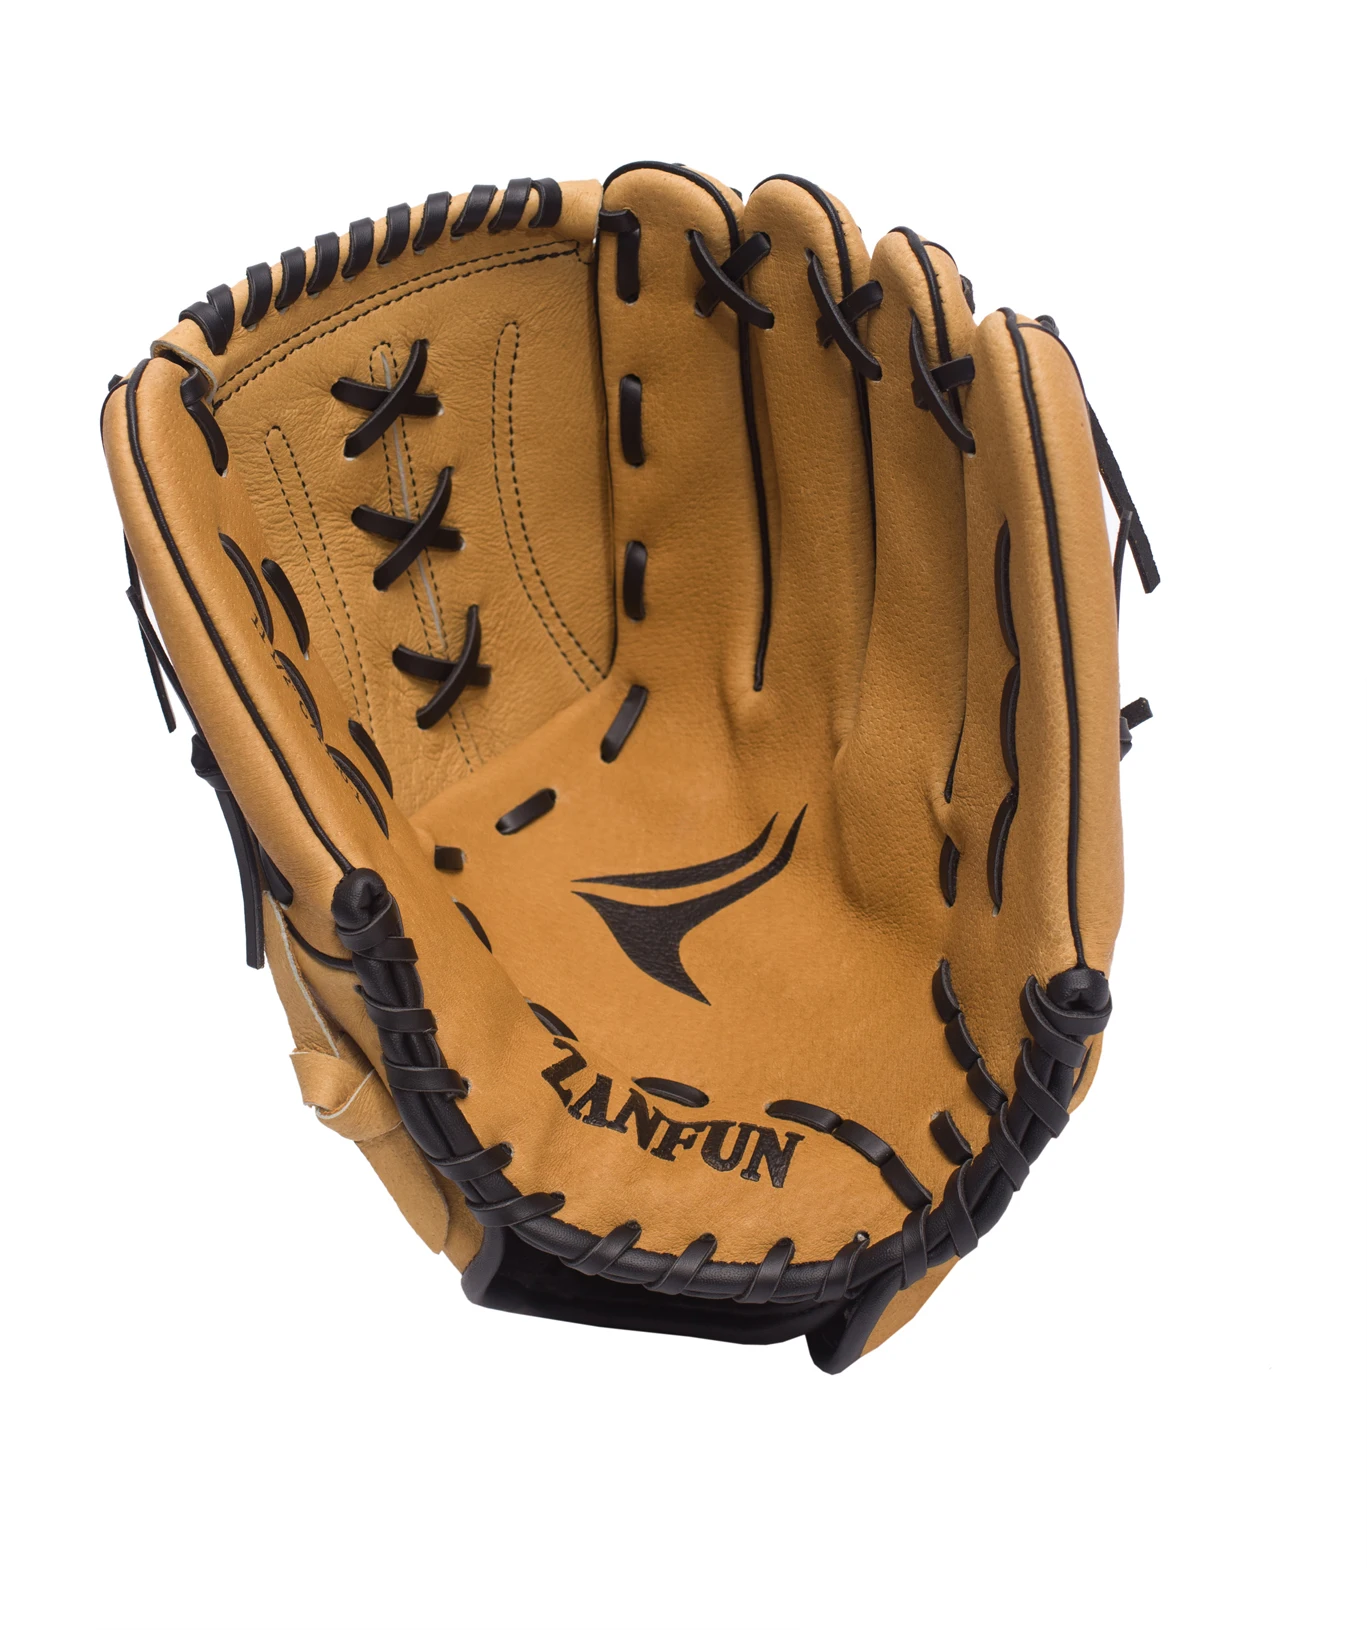 Sell Newly Designed Baseball Fielding Batting Gloves Pigskin Leather Baseball